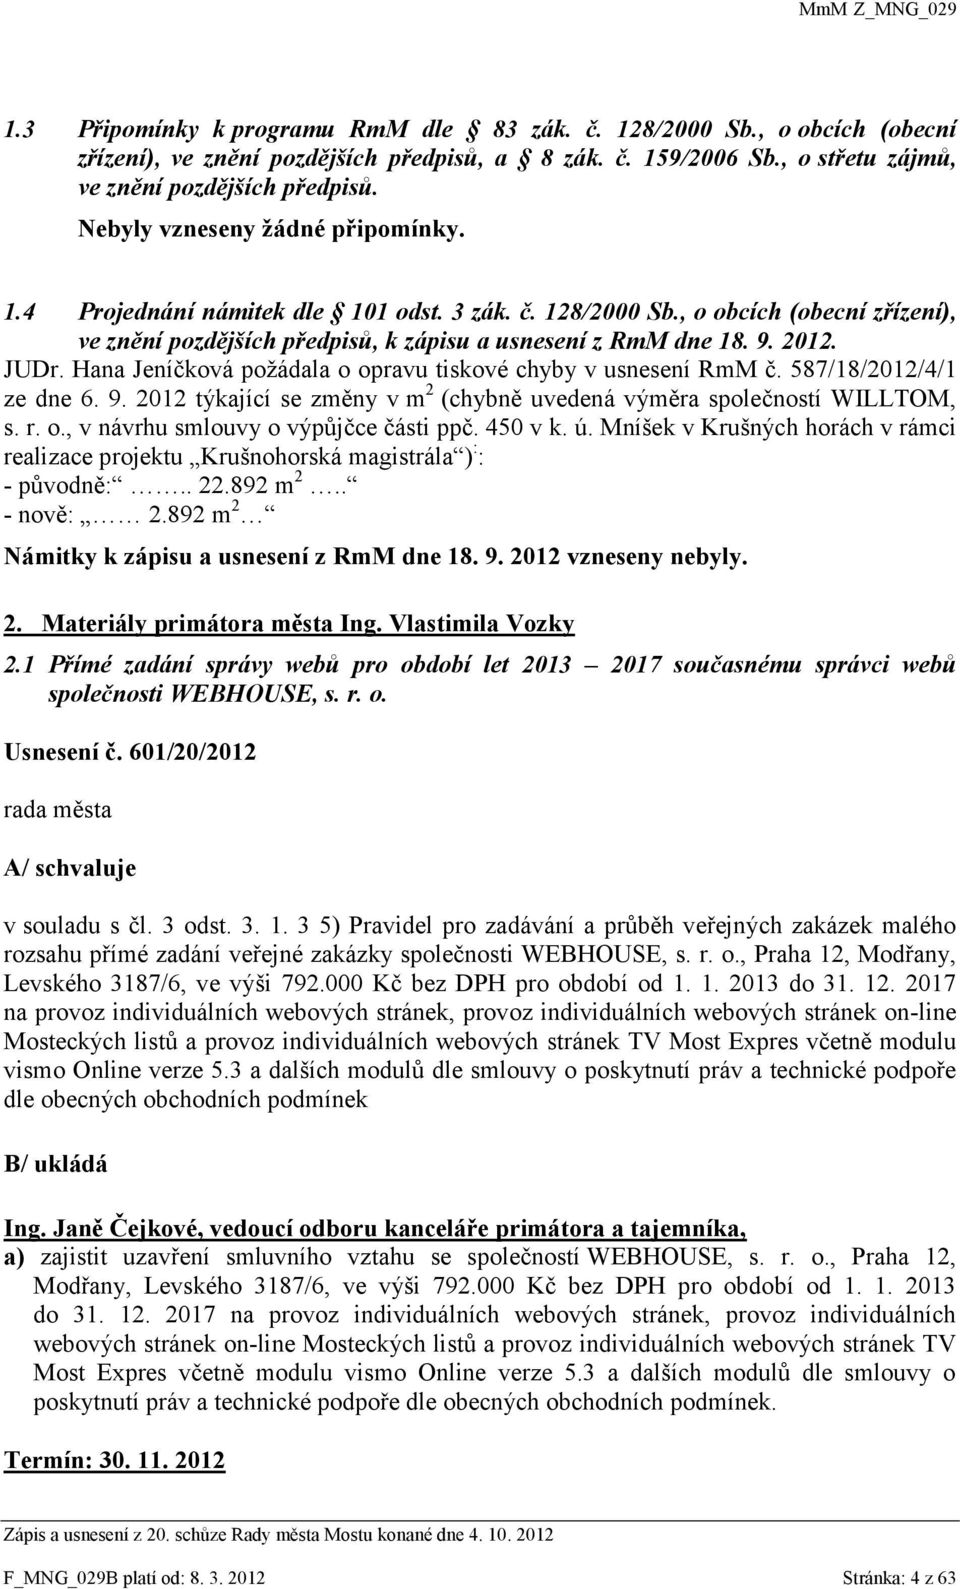 Hana Jeníčková požádala o opravu tiskové chyby v usnesení RmM č. 587/18/2012/4/1 ze dne 6. 9. 2012 týkající se změny v m 2 (chybně uvedená výměra společností WILLTOM, s. r. o., v návrhu smlouvy o výpůjčce části ppč.